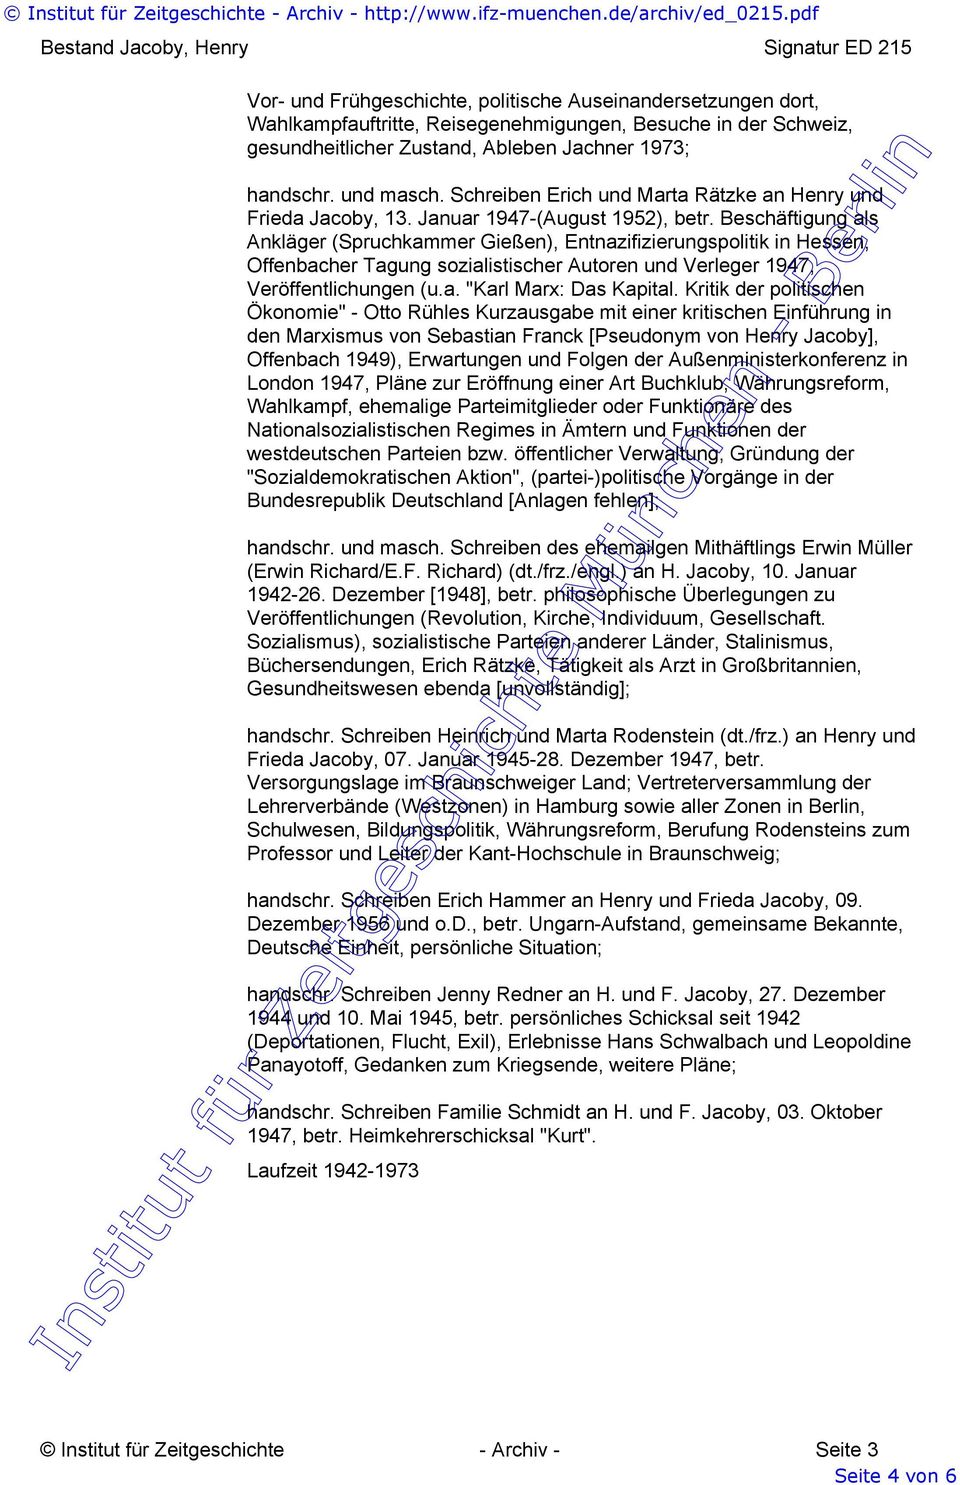 Beschäftigung als Ankläger (Spruchkammer Gießen), Entnazifizierungspolitik in Hessen, Offenbacher Tagung sozialistischer Autoren und Verleger 1947, Veröffentlichungen (u.a. "Karl Marx: Das Kapital.